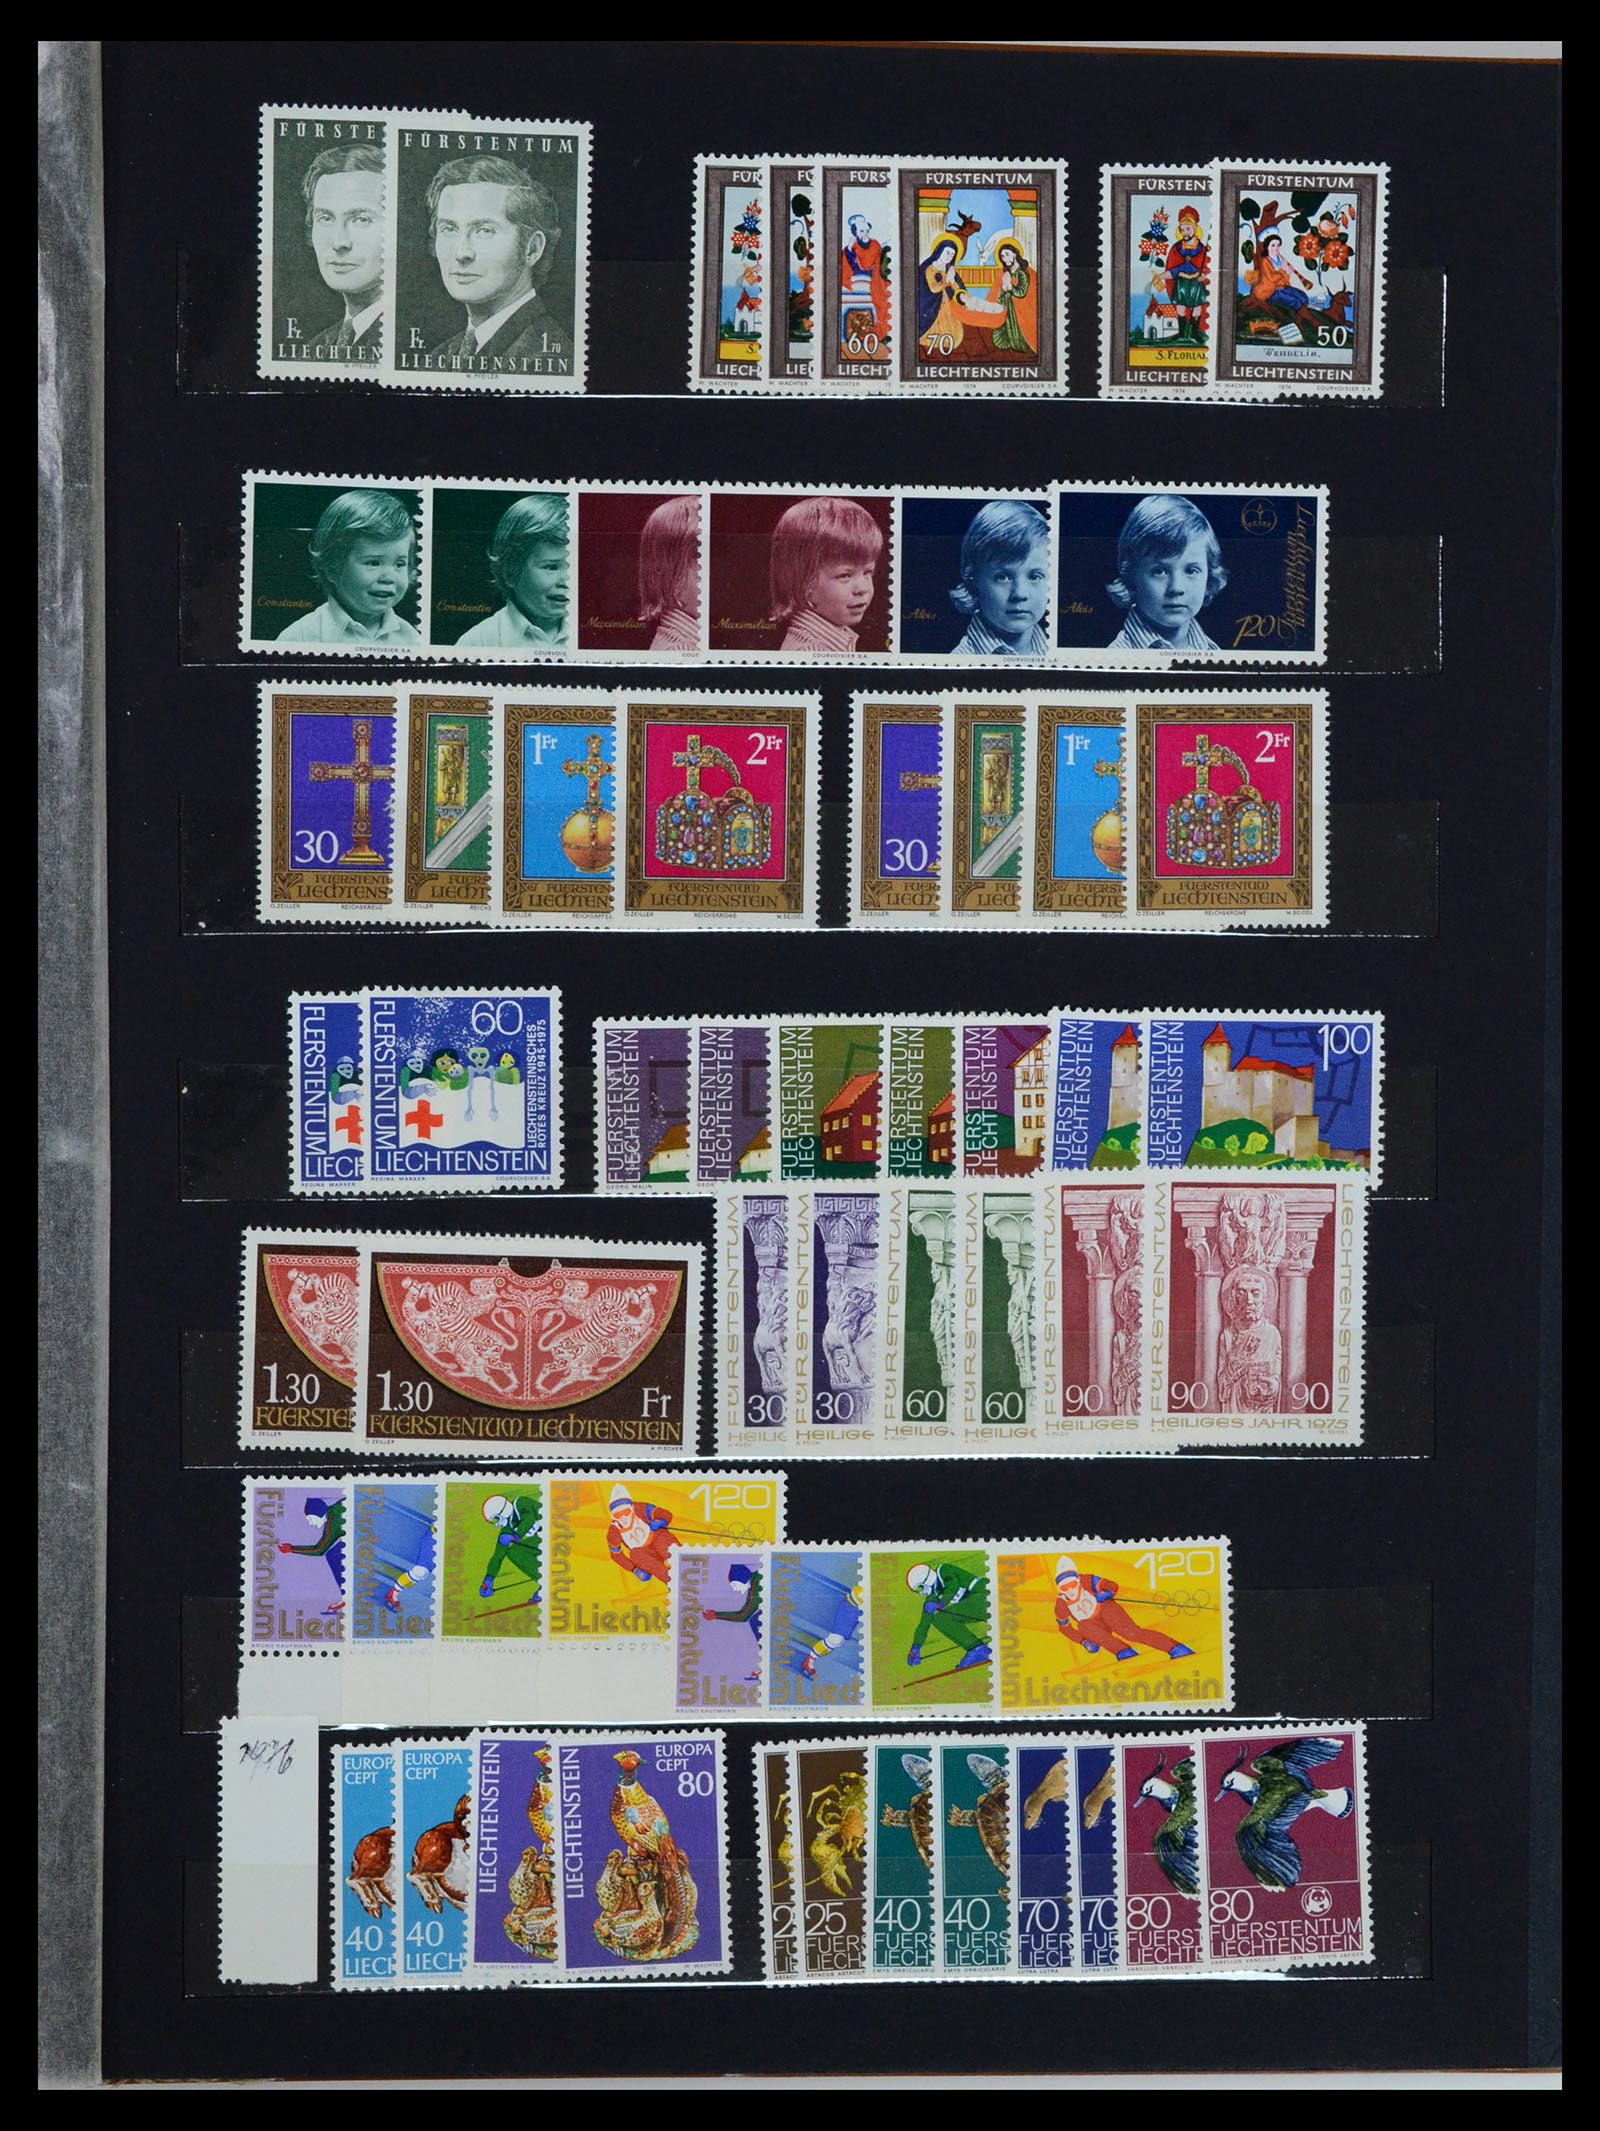 36697 017 - Stamp collection 36697 Liechtenstein 1912-1985.